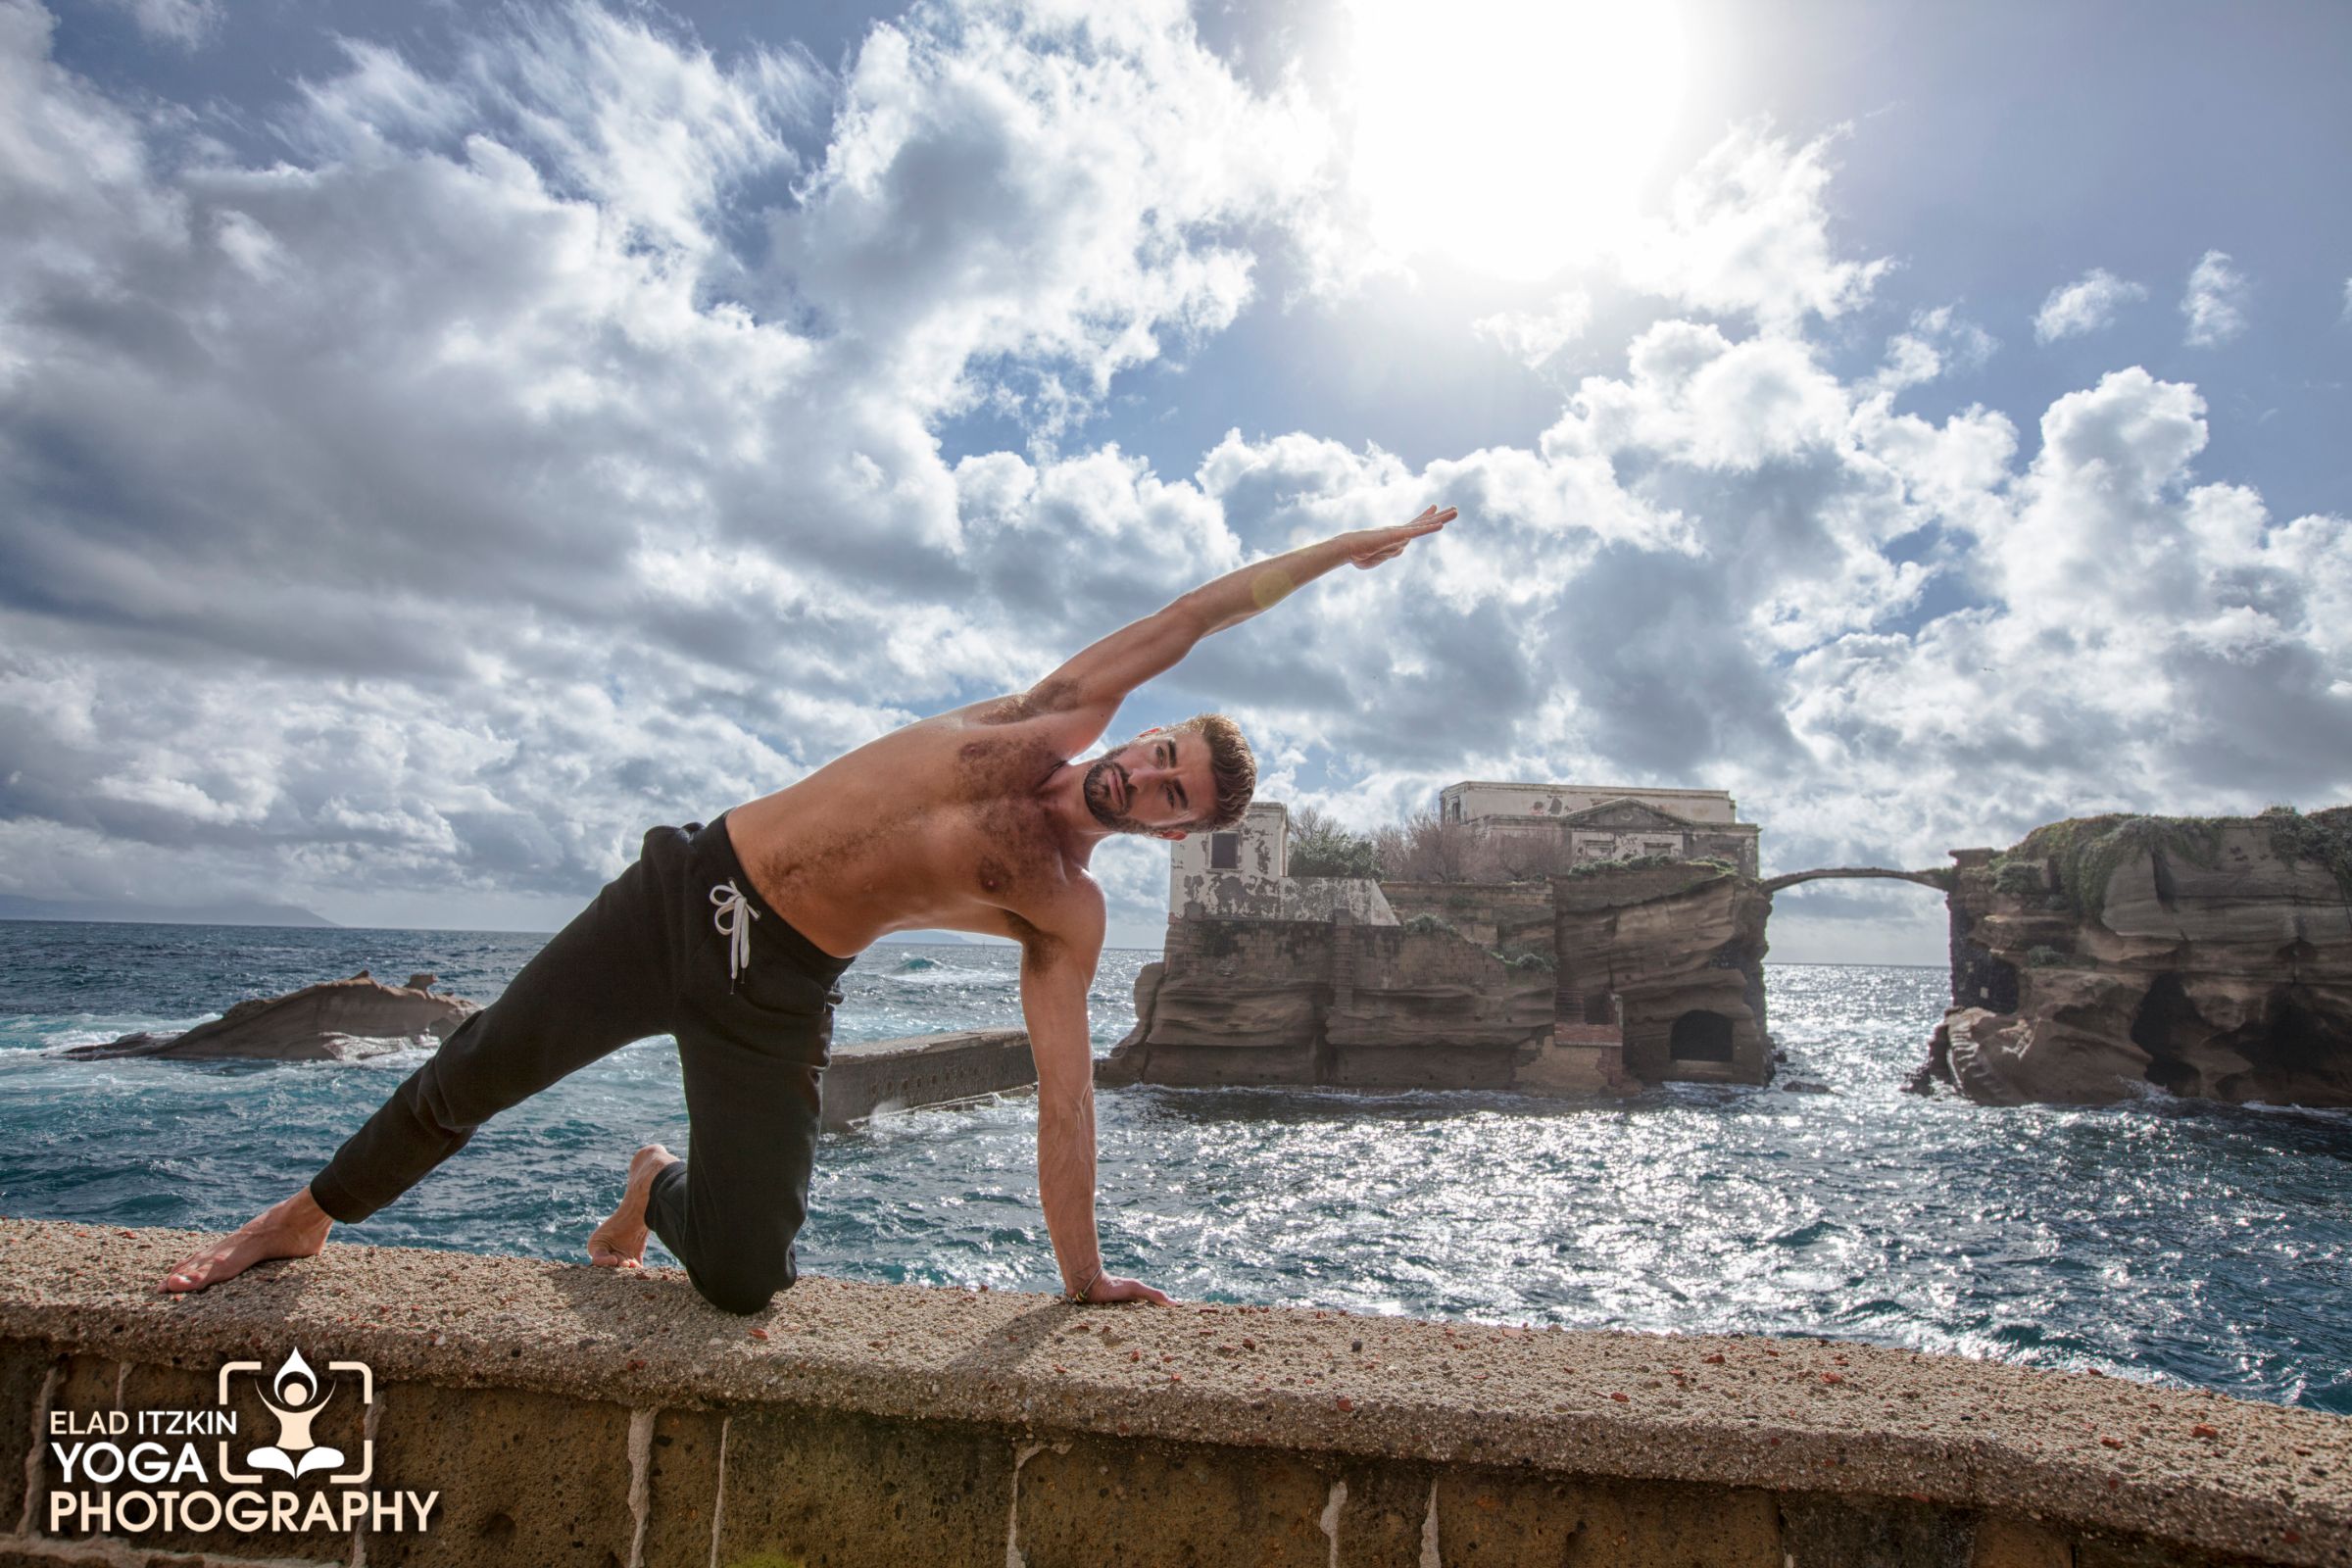 Enrico De Luca Yoga Photos, Naples, Italy - Elad Itzkin Yoga Photography